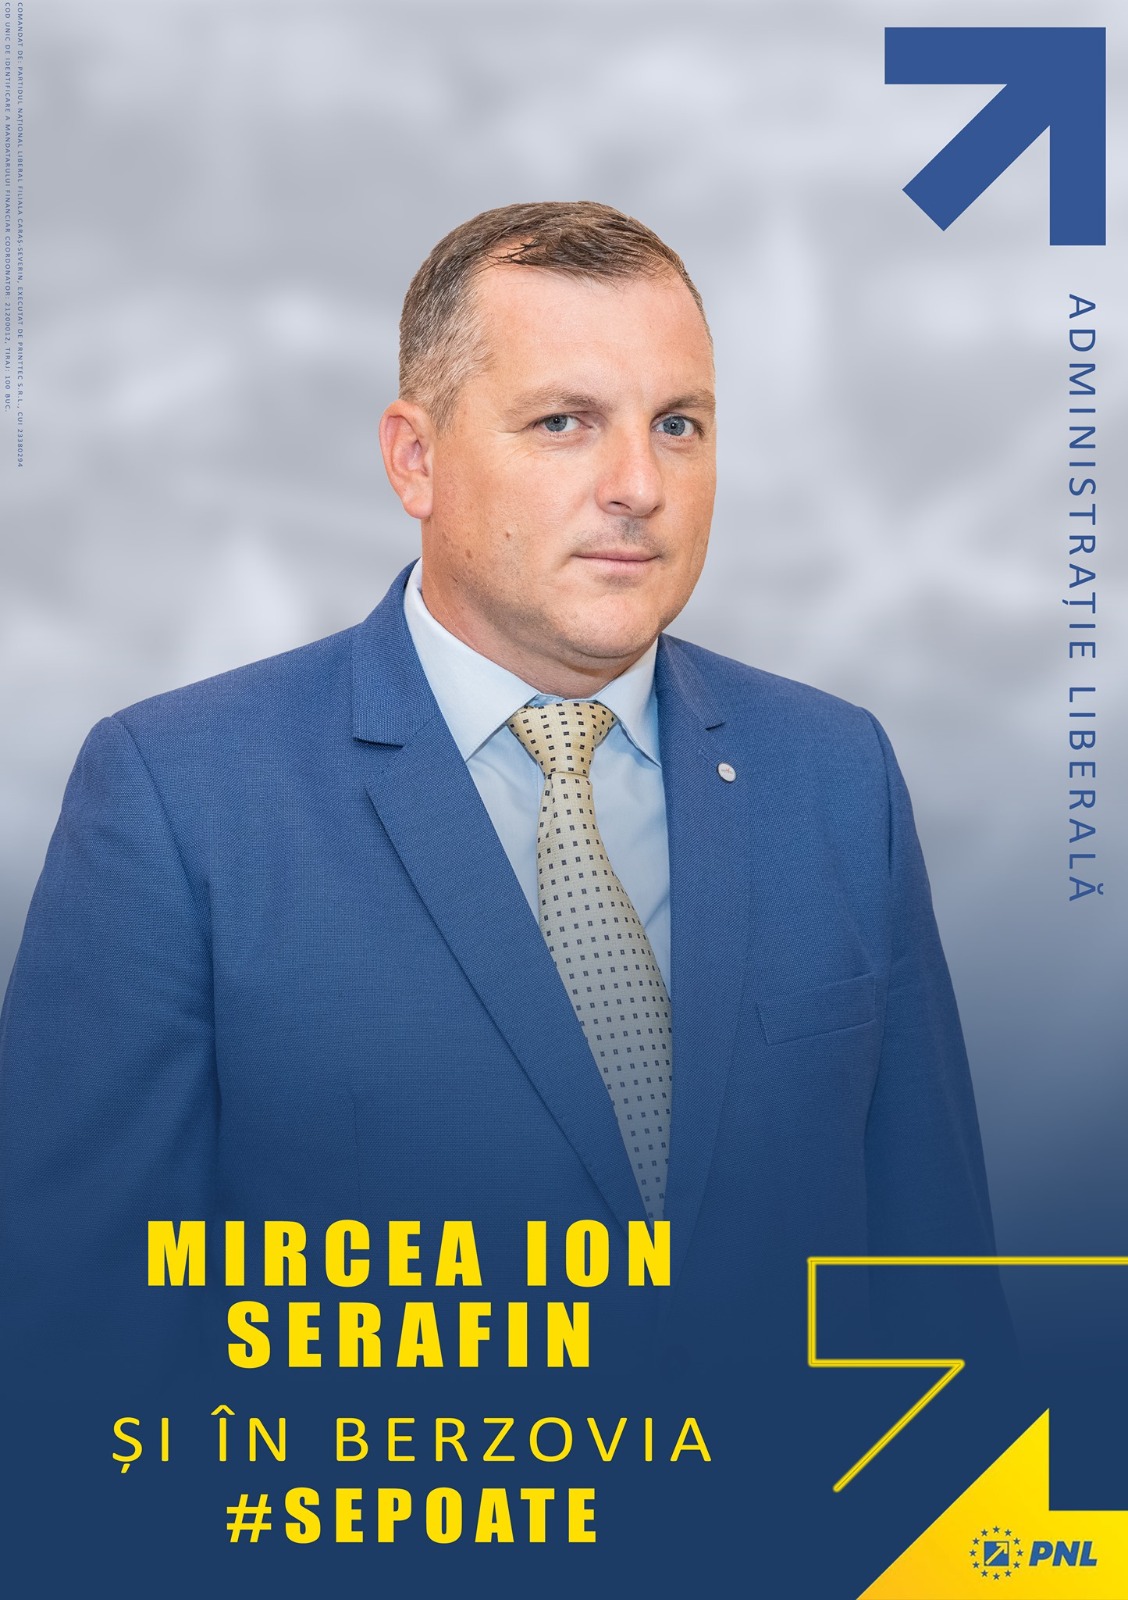 Despre primarii PNL din Caraș-Severin vorbesc faptele.